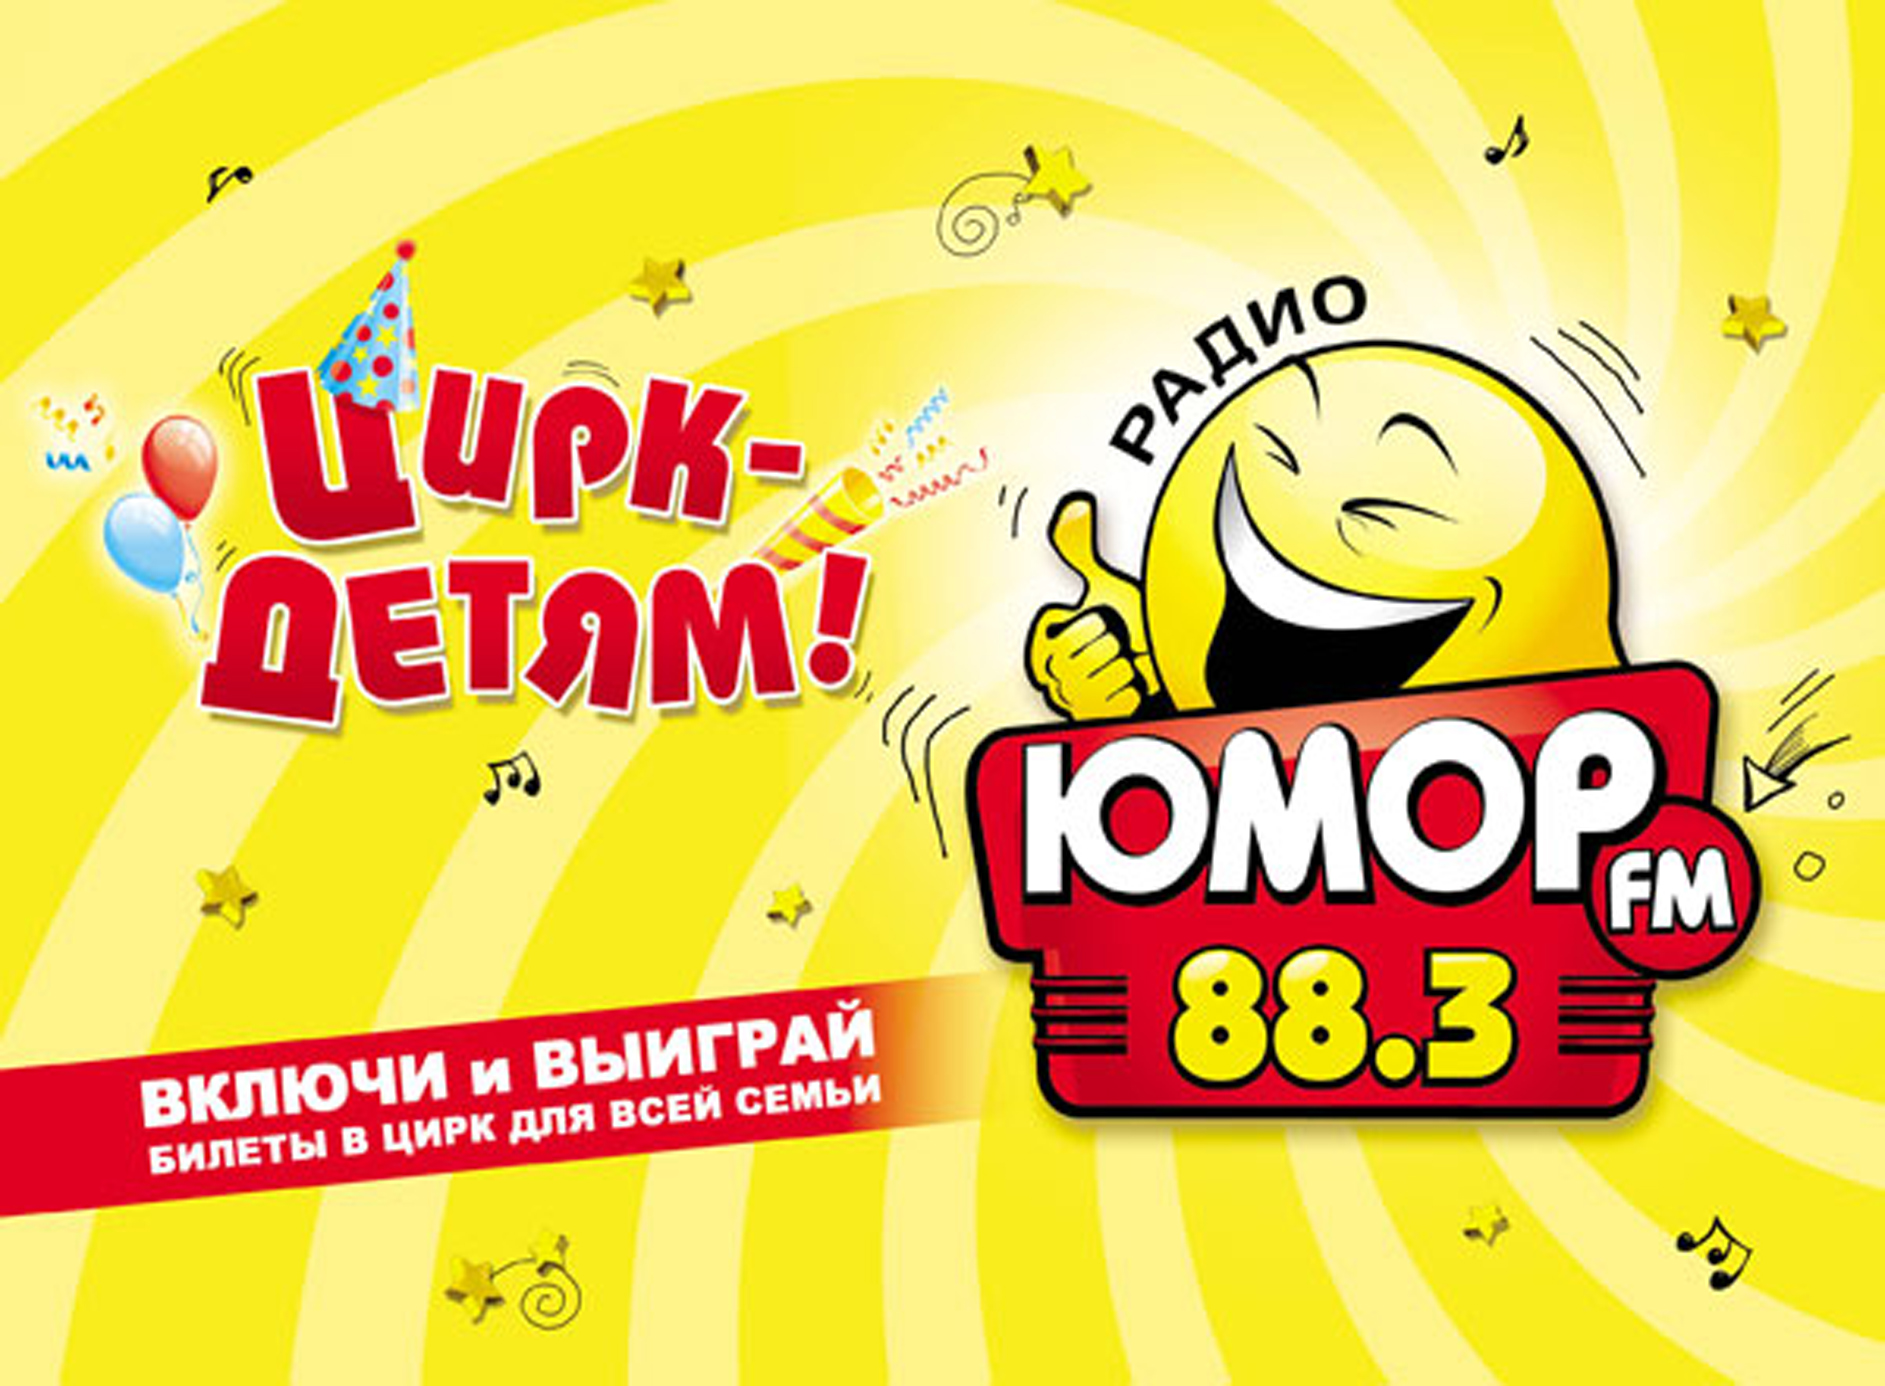 Юмор fm. Юмор ФМ логотип. Радио юмор ФМ. Юмор fm Москва.